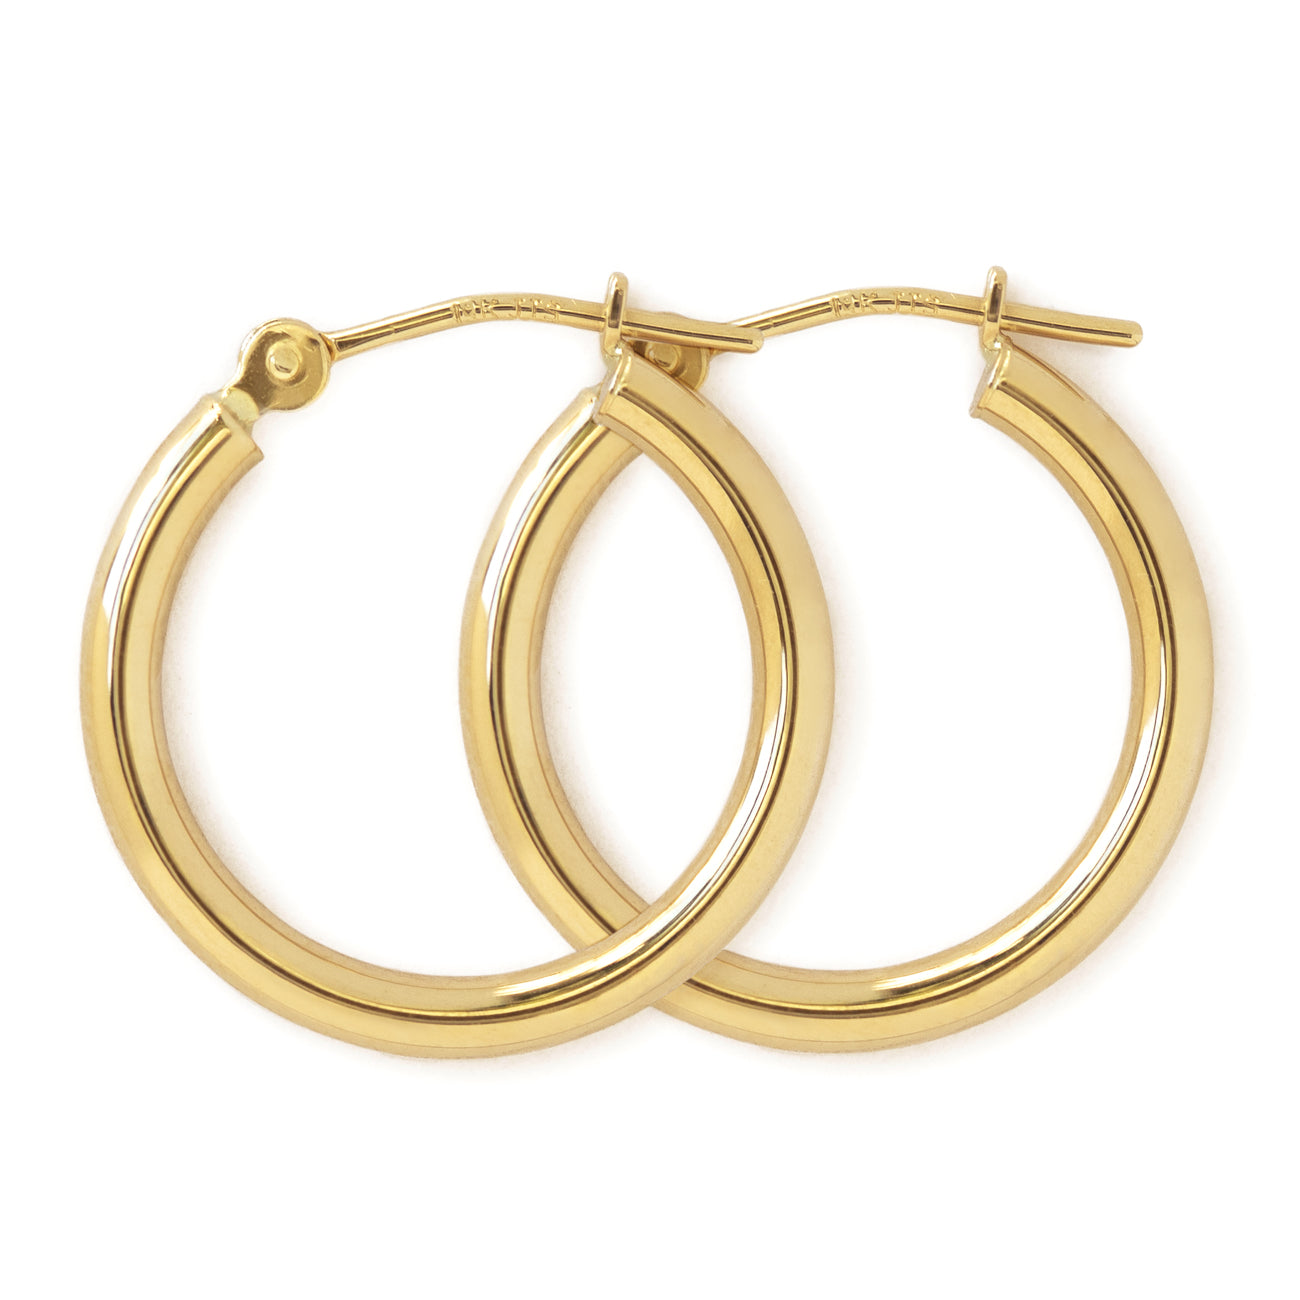 Korean Gold-Plated Triple Curved Hoop Earrings Stainless Steel Hoop Earring